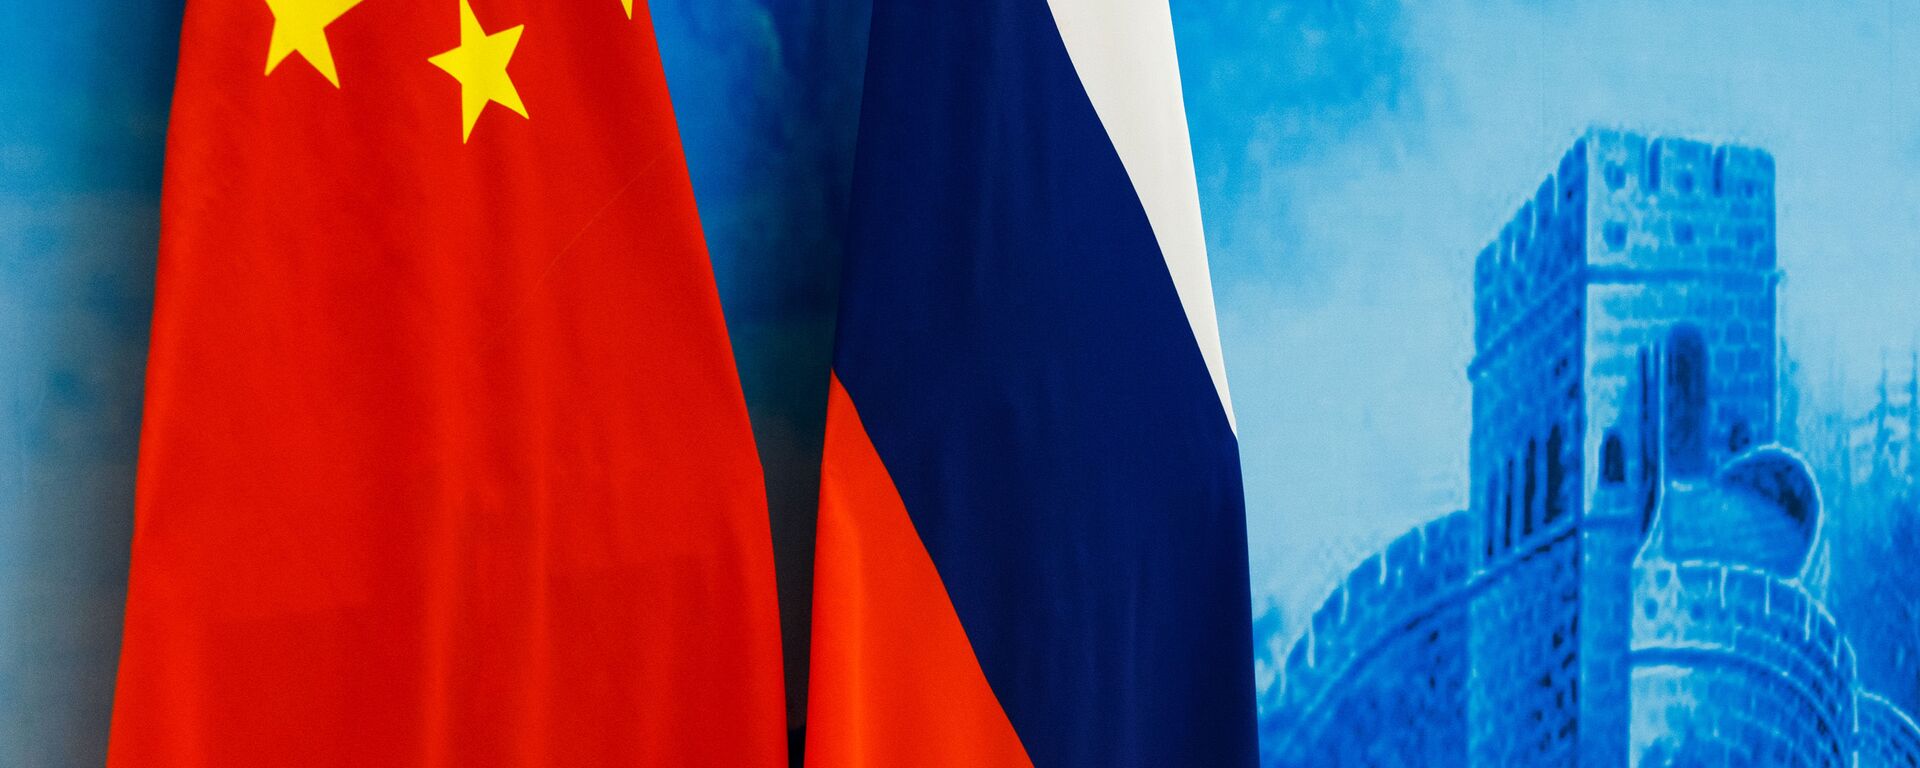 Rusijos ir Kinijos vėliavos - Sputnik Lietuva, 1920, 28.06.2021